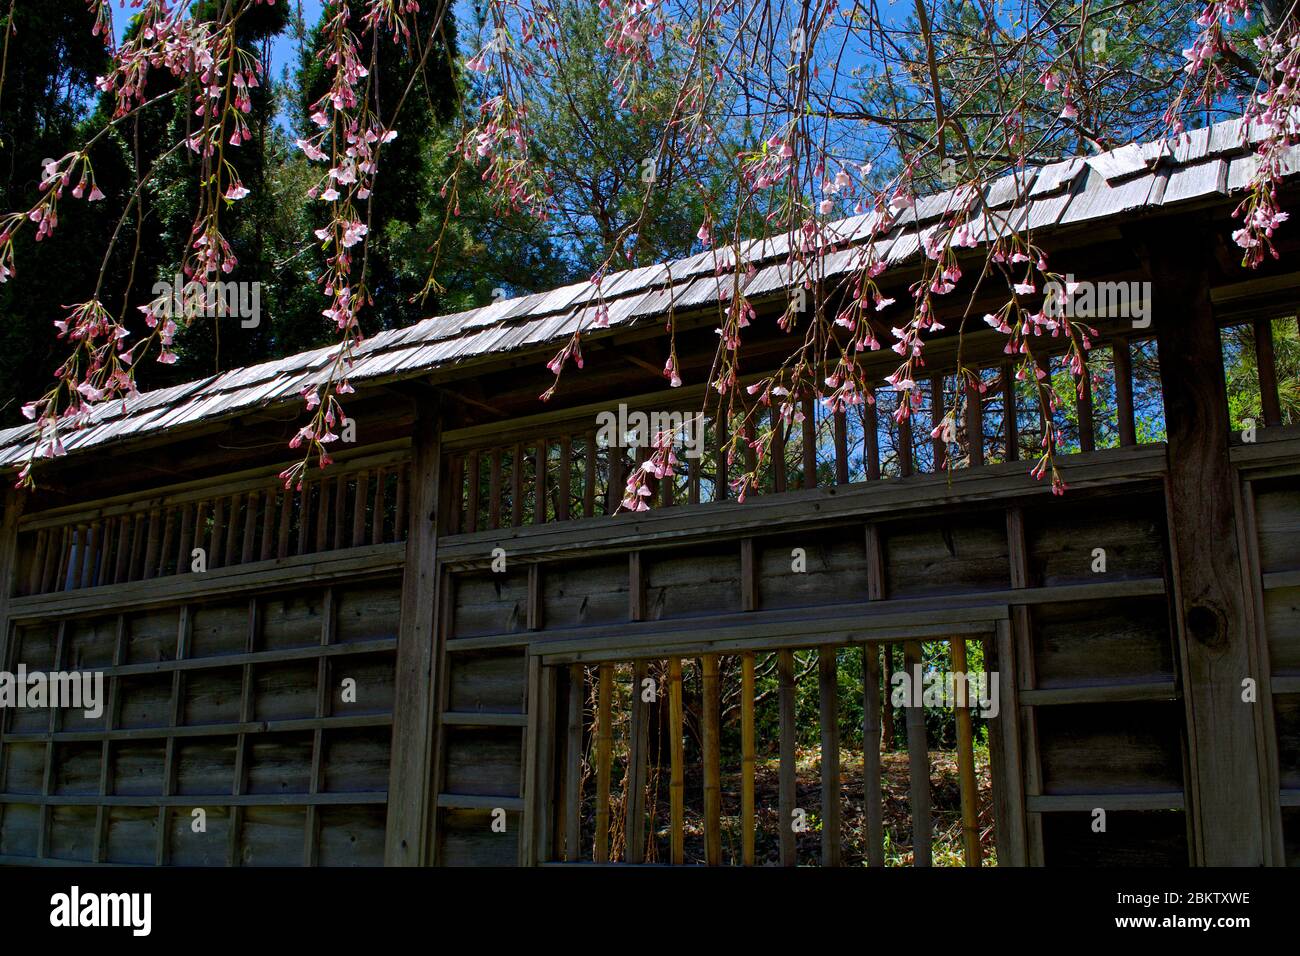 Jardin japonais avec clôtures japonaises traditionnelles dans un parc public, Ontario, Canada Banque D'Images